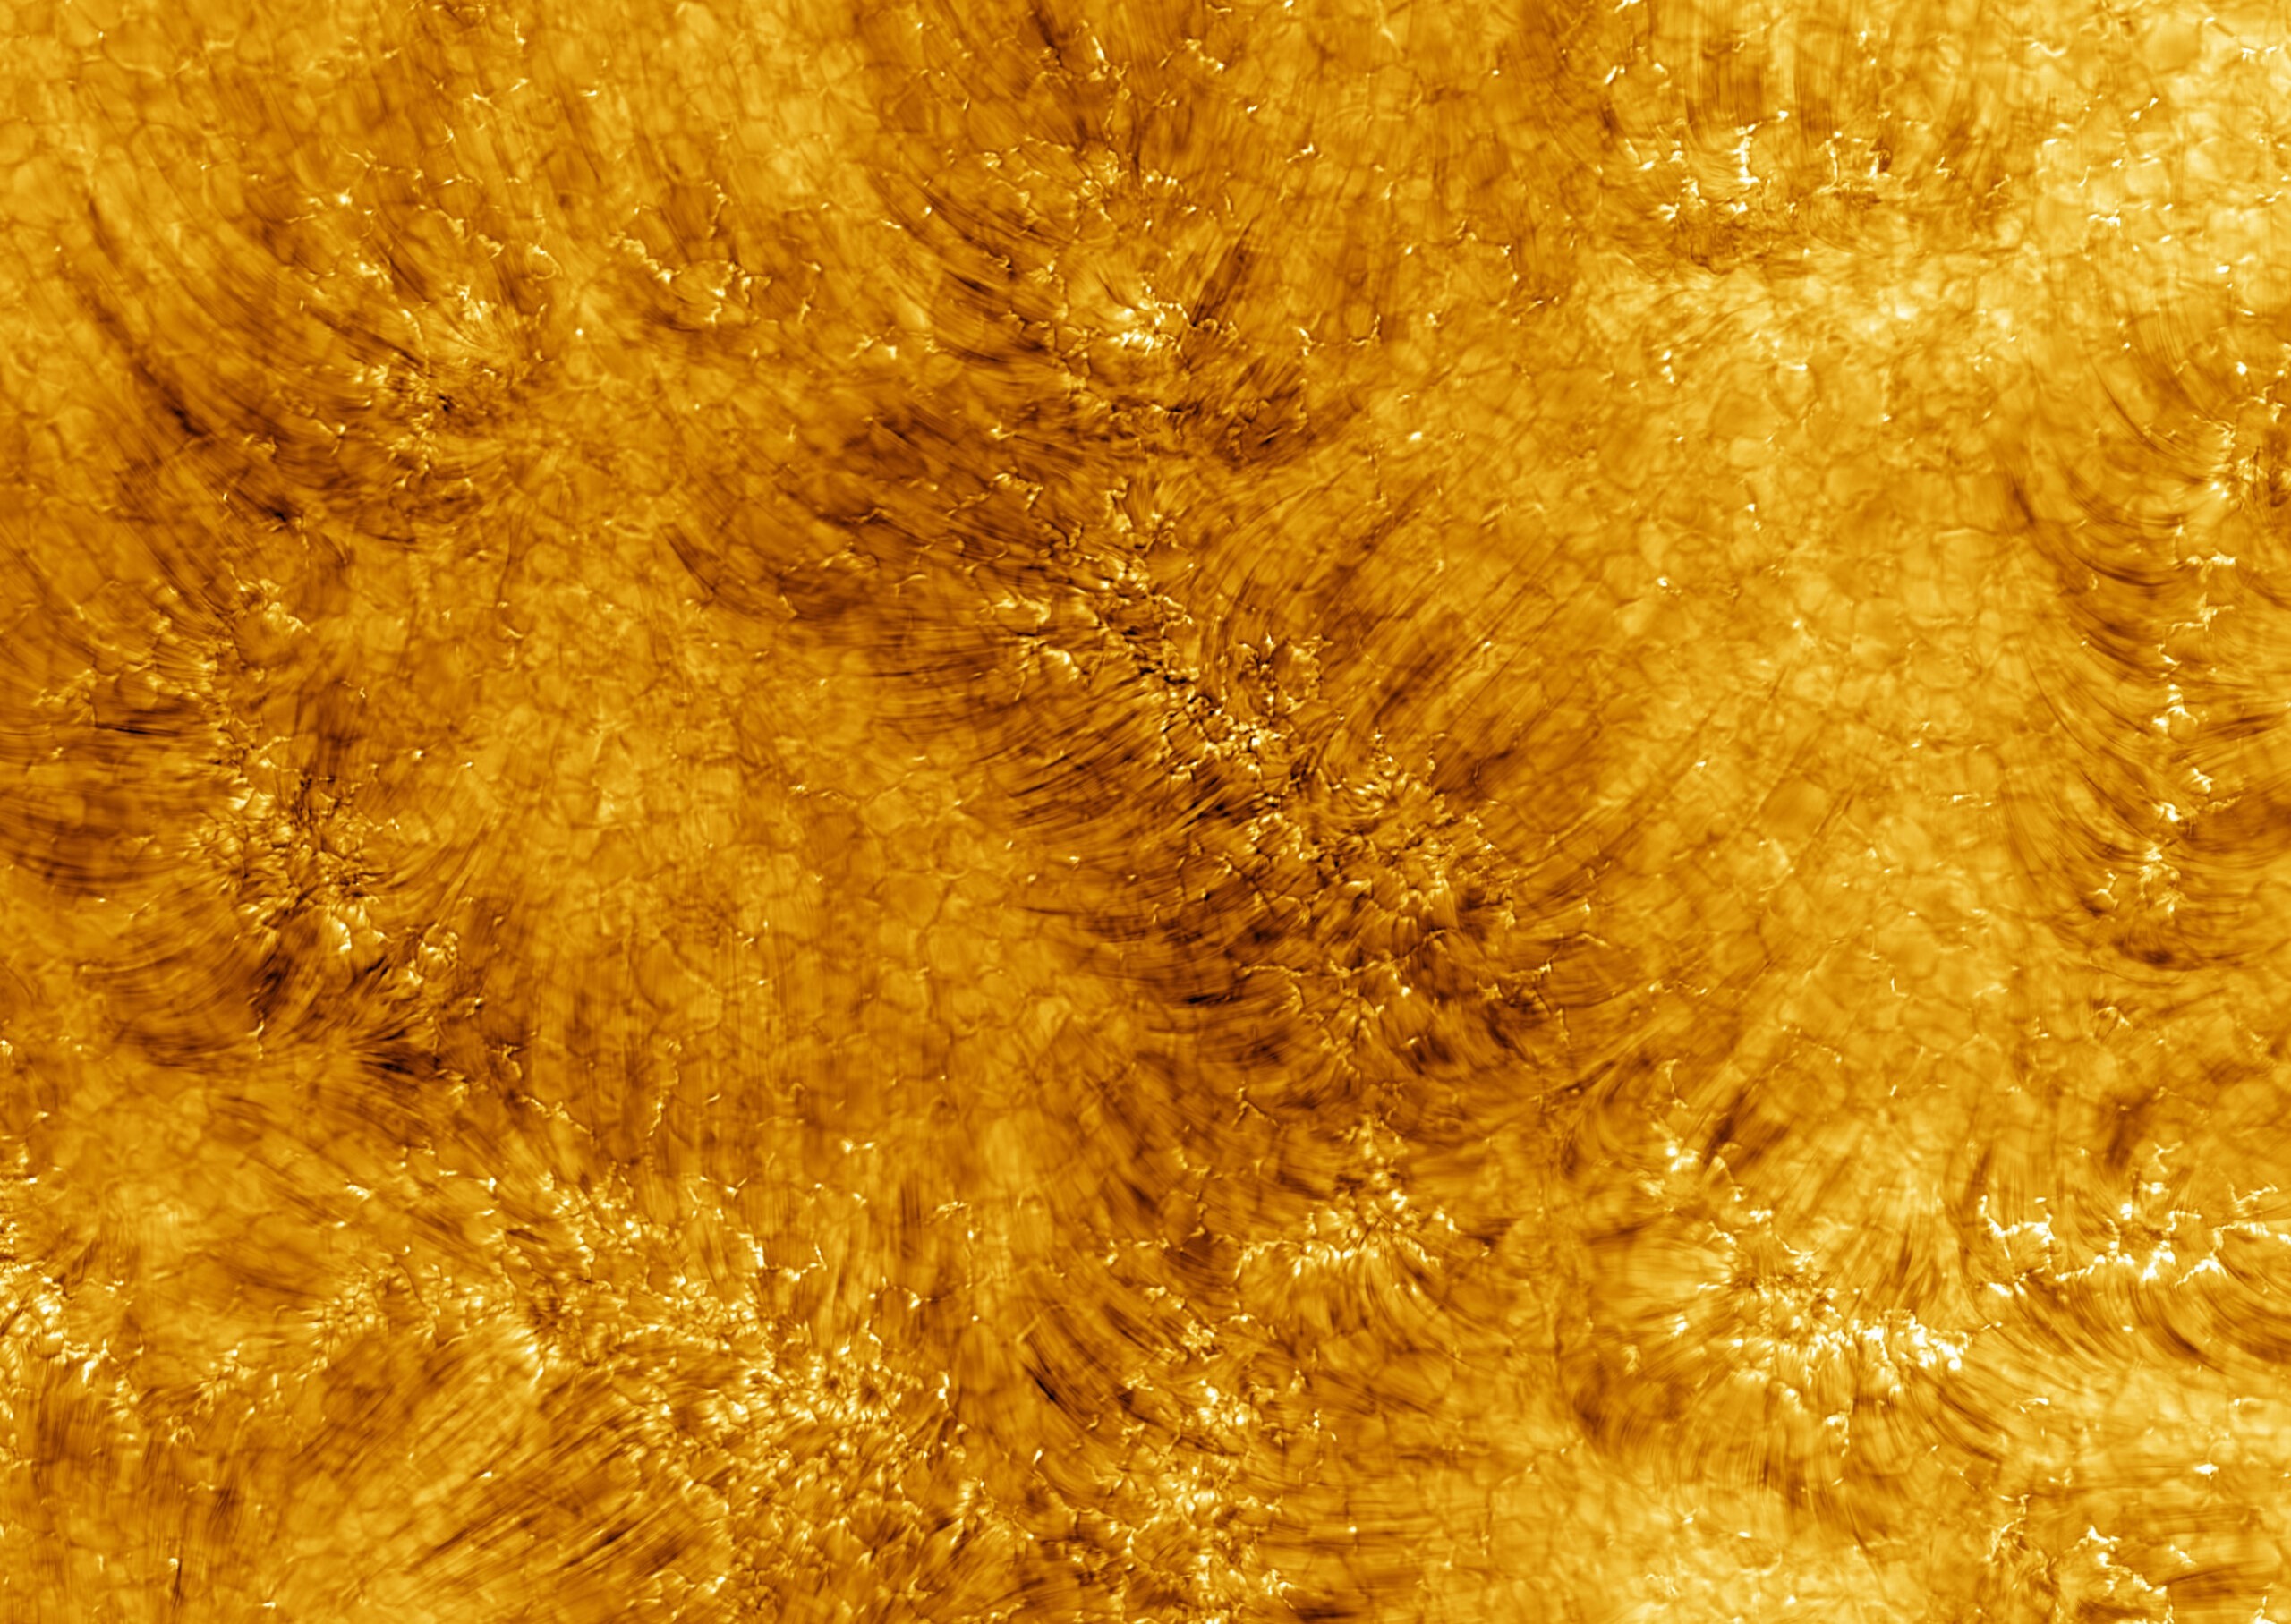 Imagens da cromosfera do Sol captadas pelo Telescópio Daniel Inouye (Foto: Divulgação/ NSF)